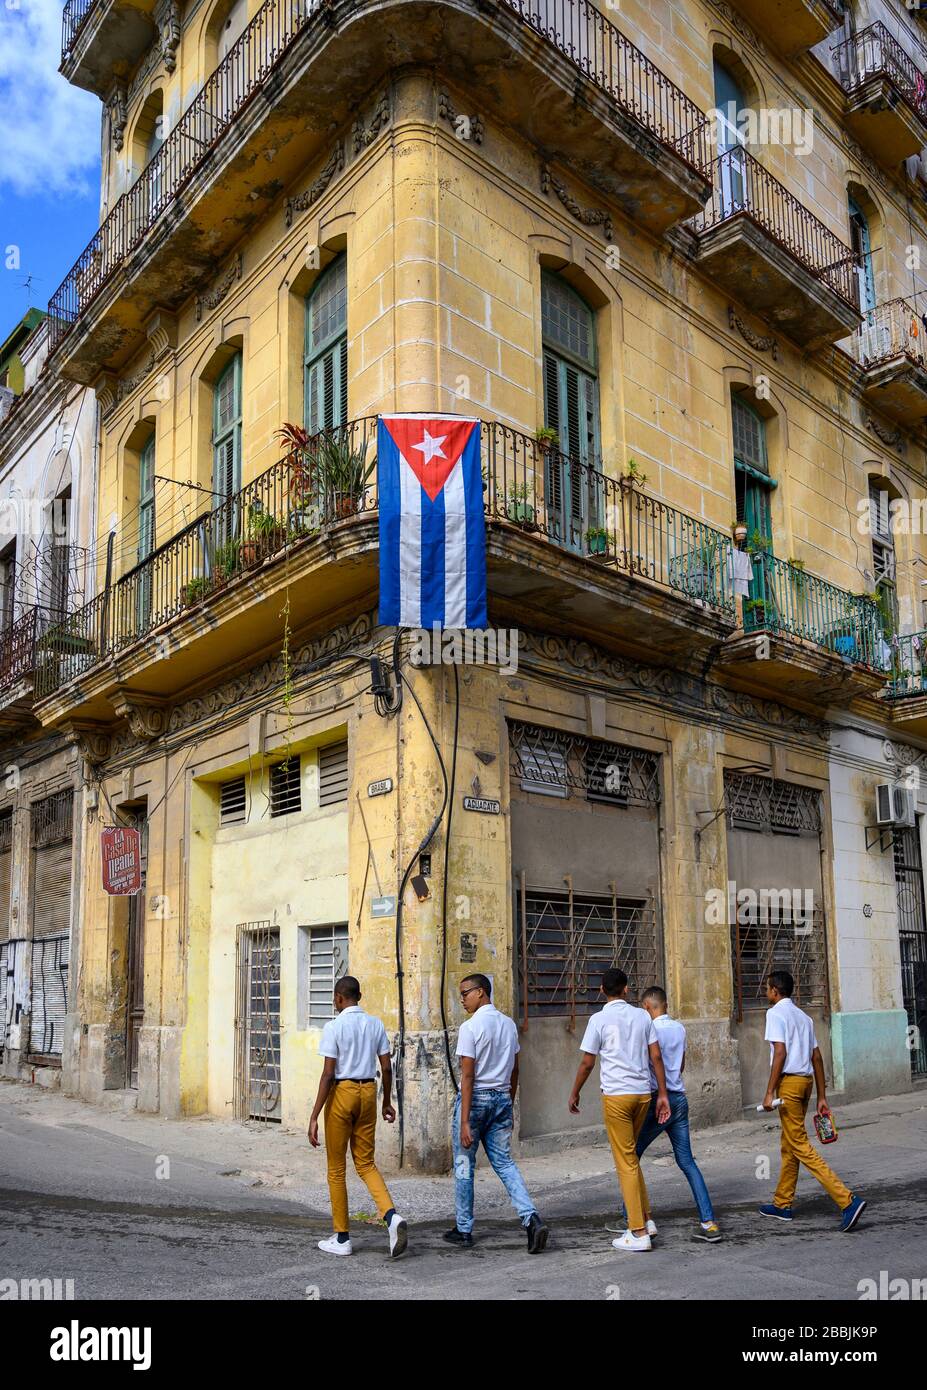 Schuljungen, Gebäude und Fahne in Brasilien und Aguacate, Havanna, Kuba Stockfoto